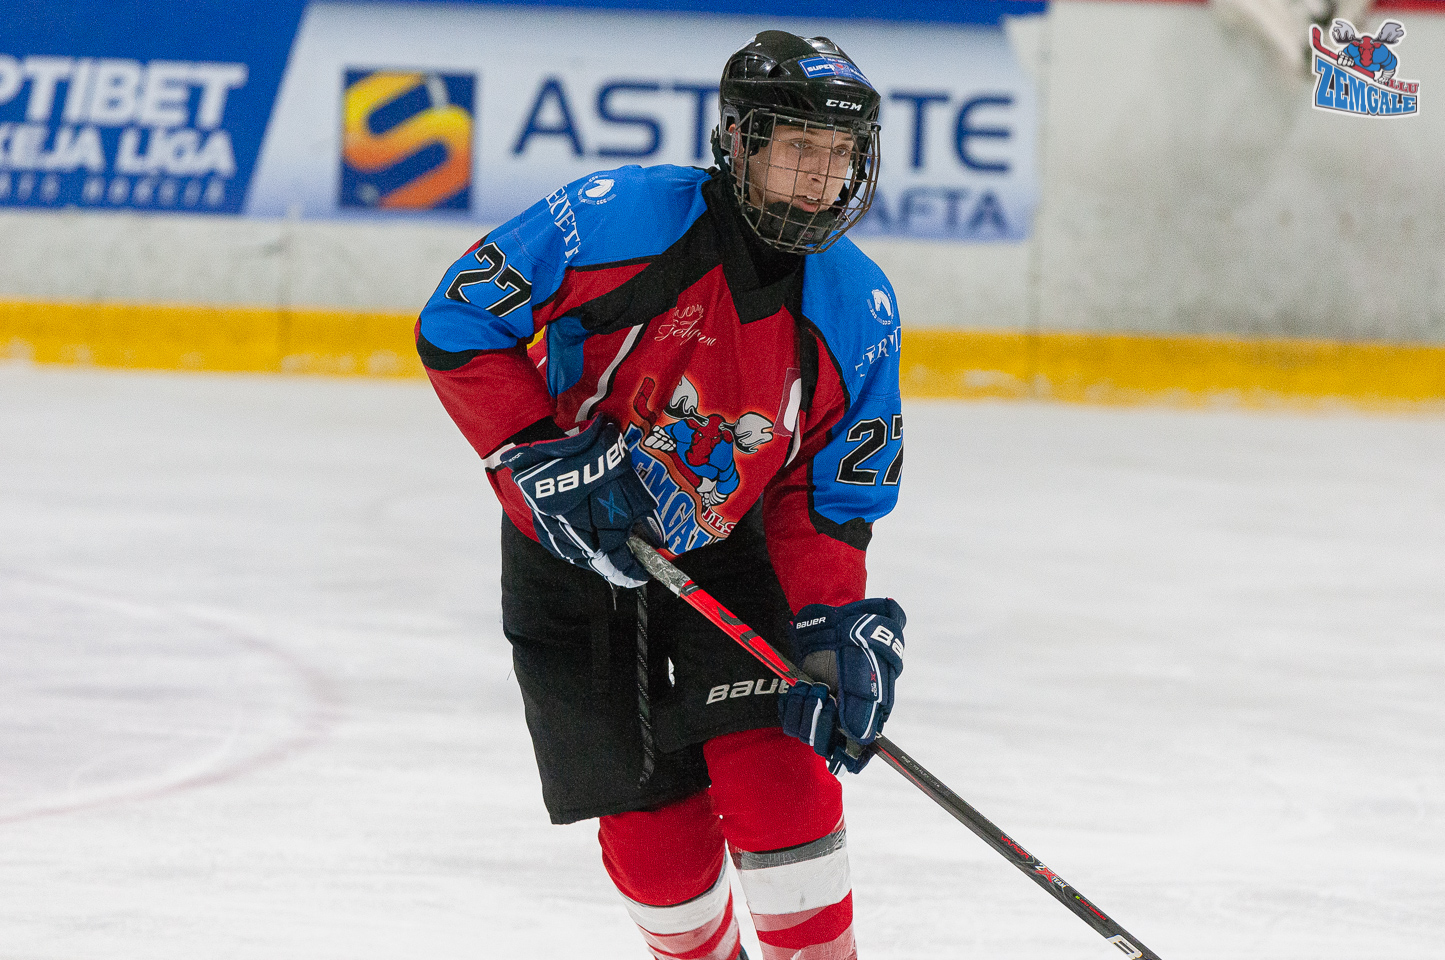 Latvijas bērnu un jauniešu hokeja čempionāta (LBJČH) regulārā čempionāta spēle starp “JLSS U15 B” un “Brocēnu NBJSS” Jelgavas ledus hallē 2019. gada 22. decembrī | Foto: Ruslans Antropovs / rusantro.com